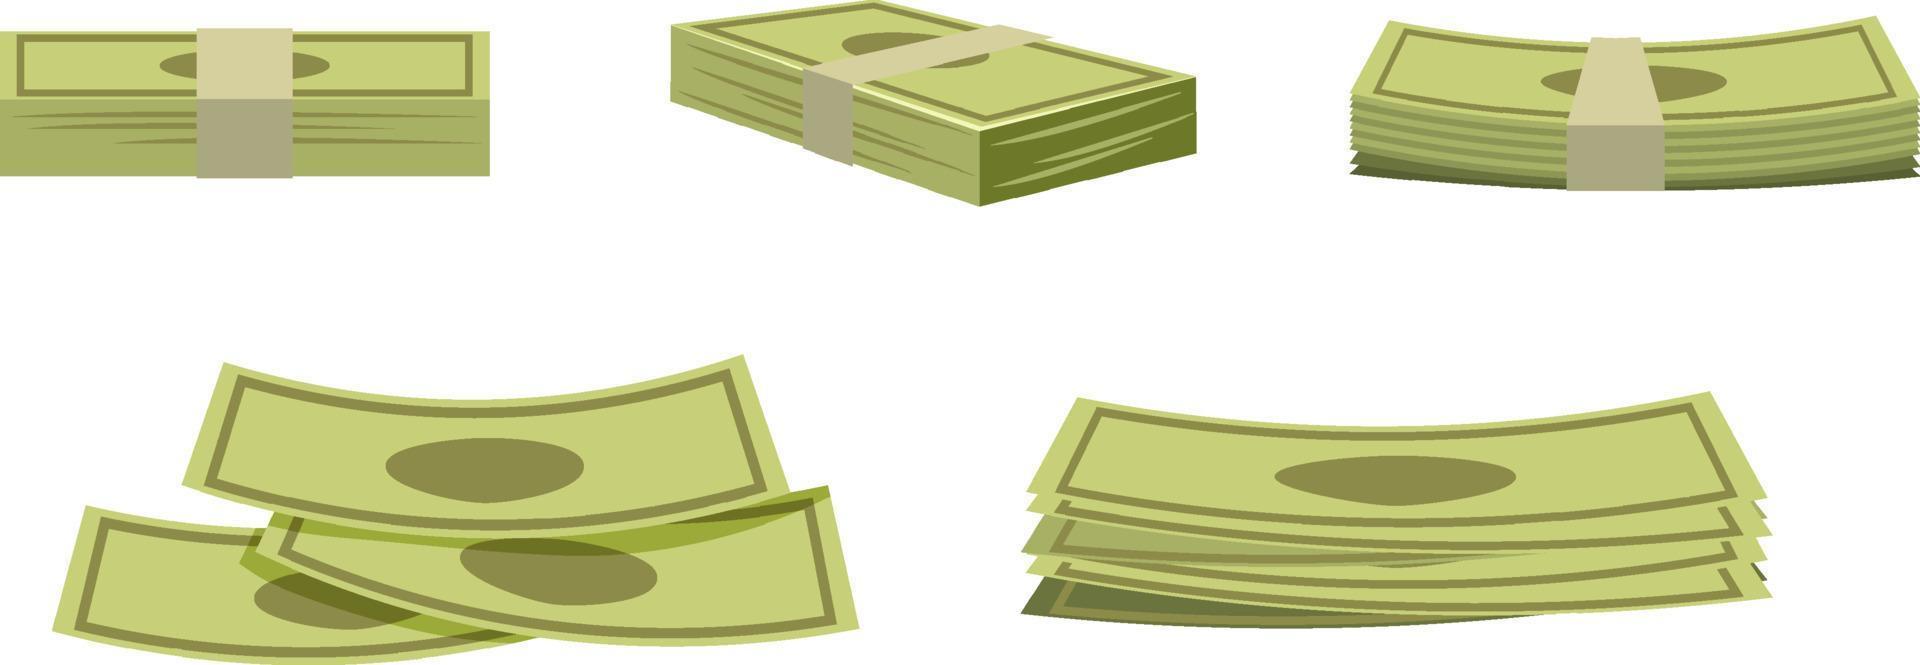 pila de billetes de dinero en estilo de dibujos animados vector